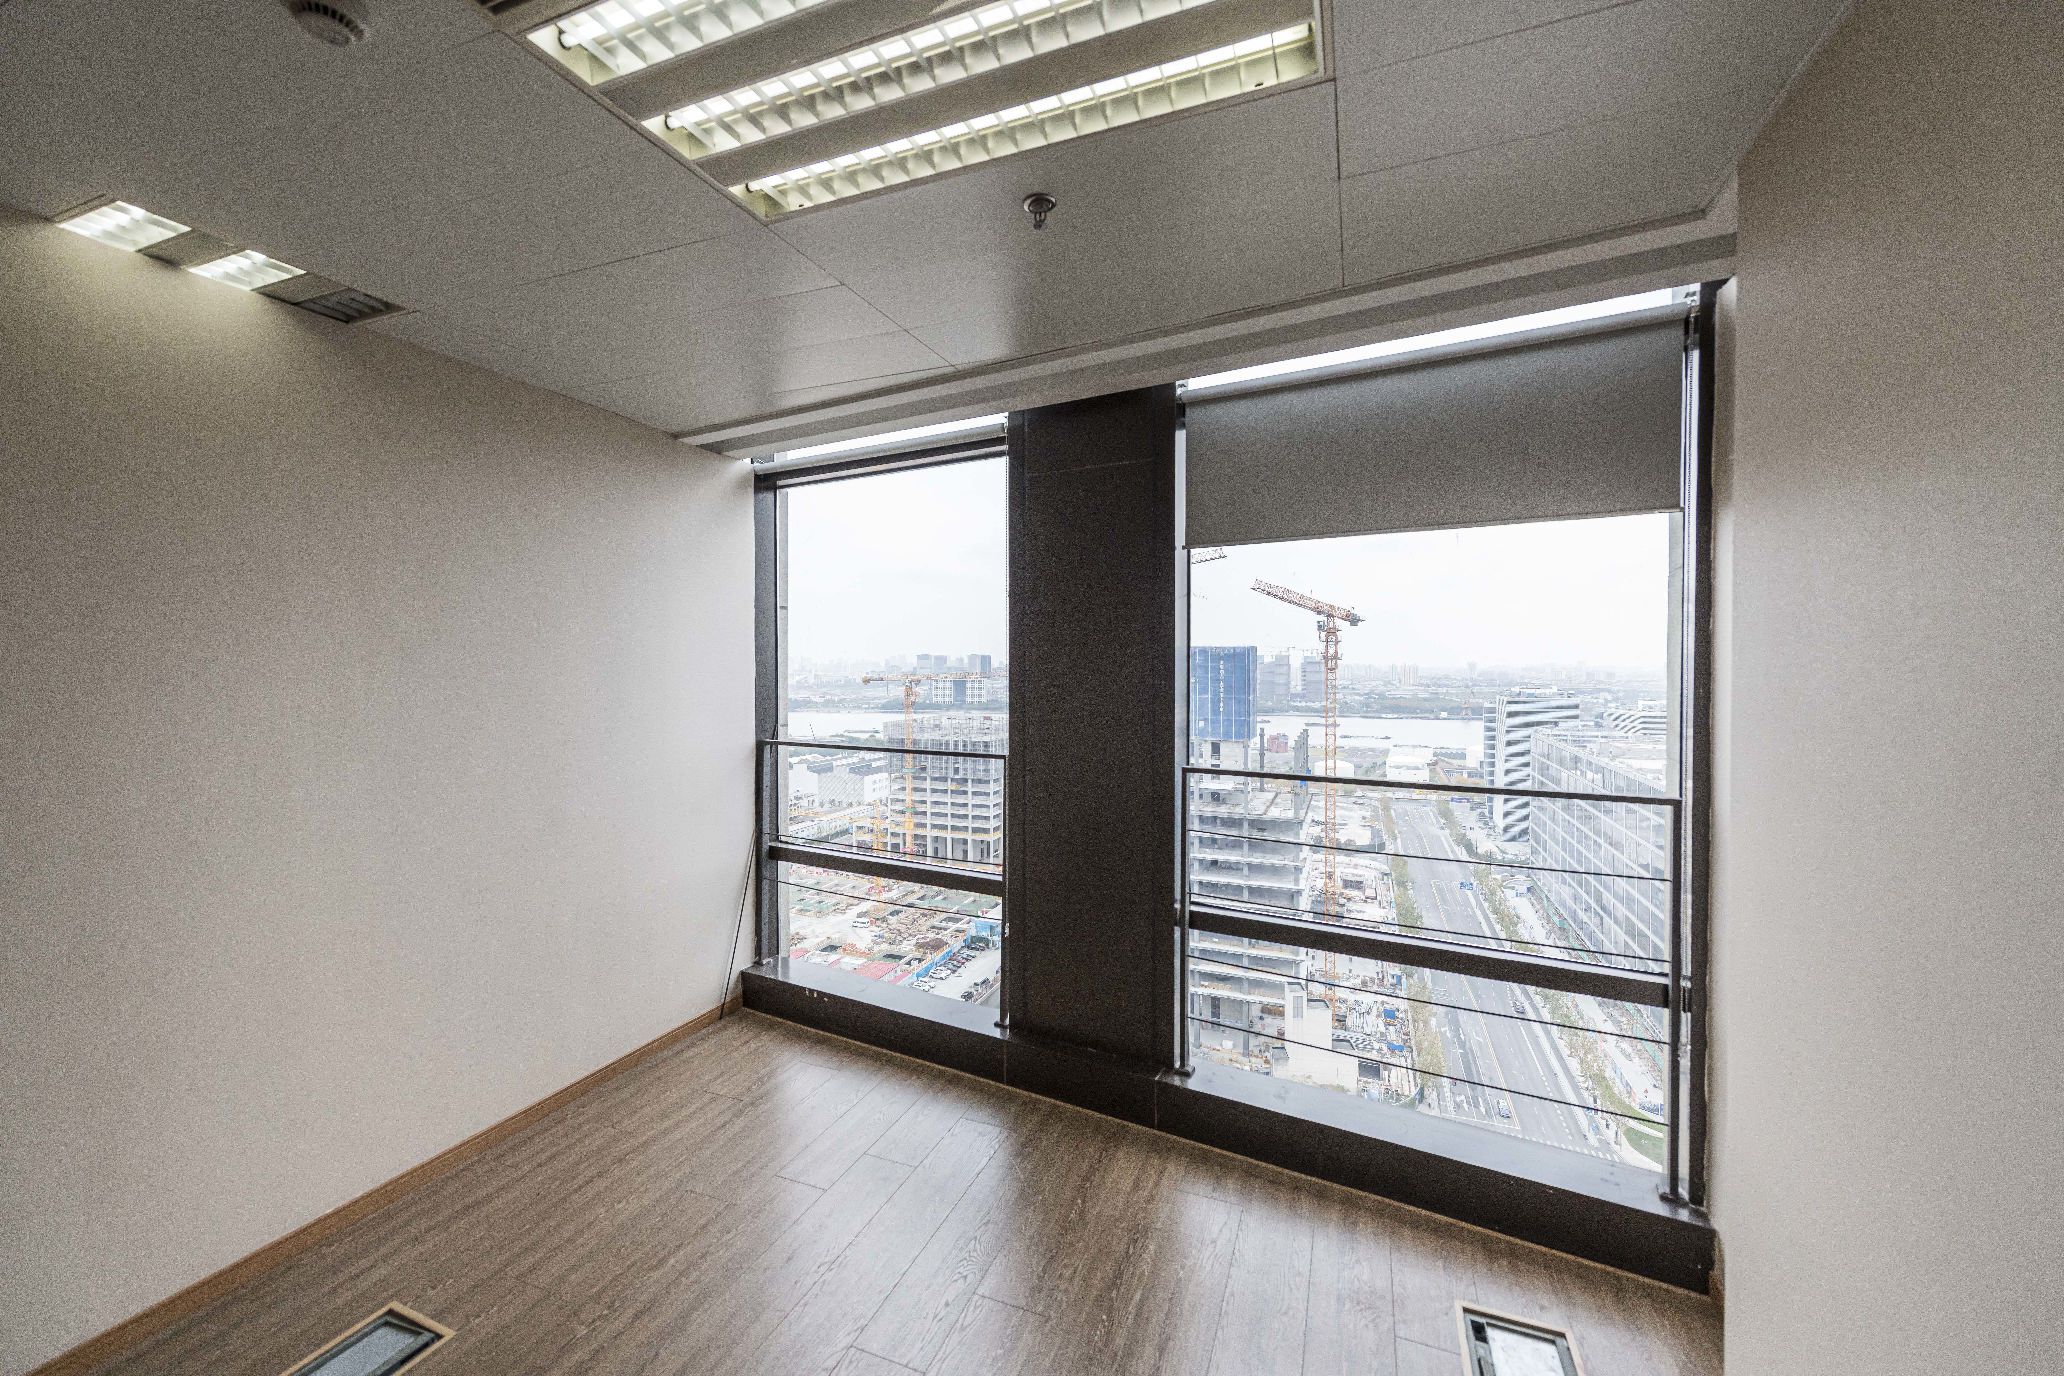 绿地汇中心270平米办公室出租-租金价格6.50元/m²/天